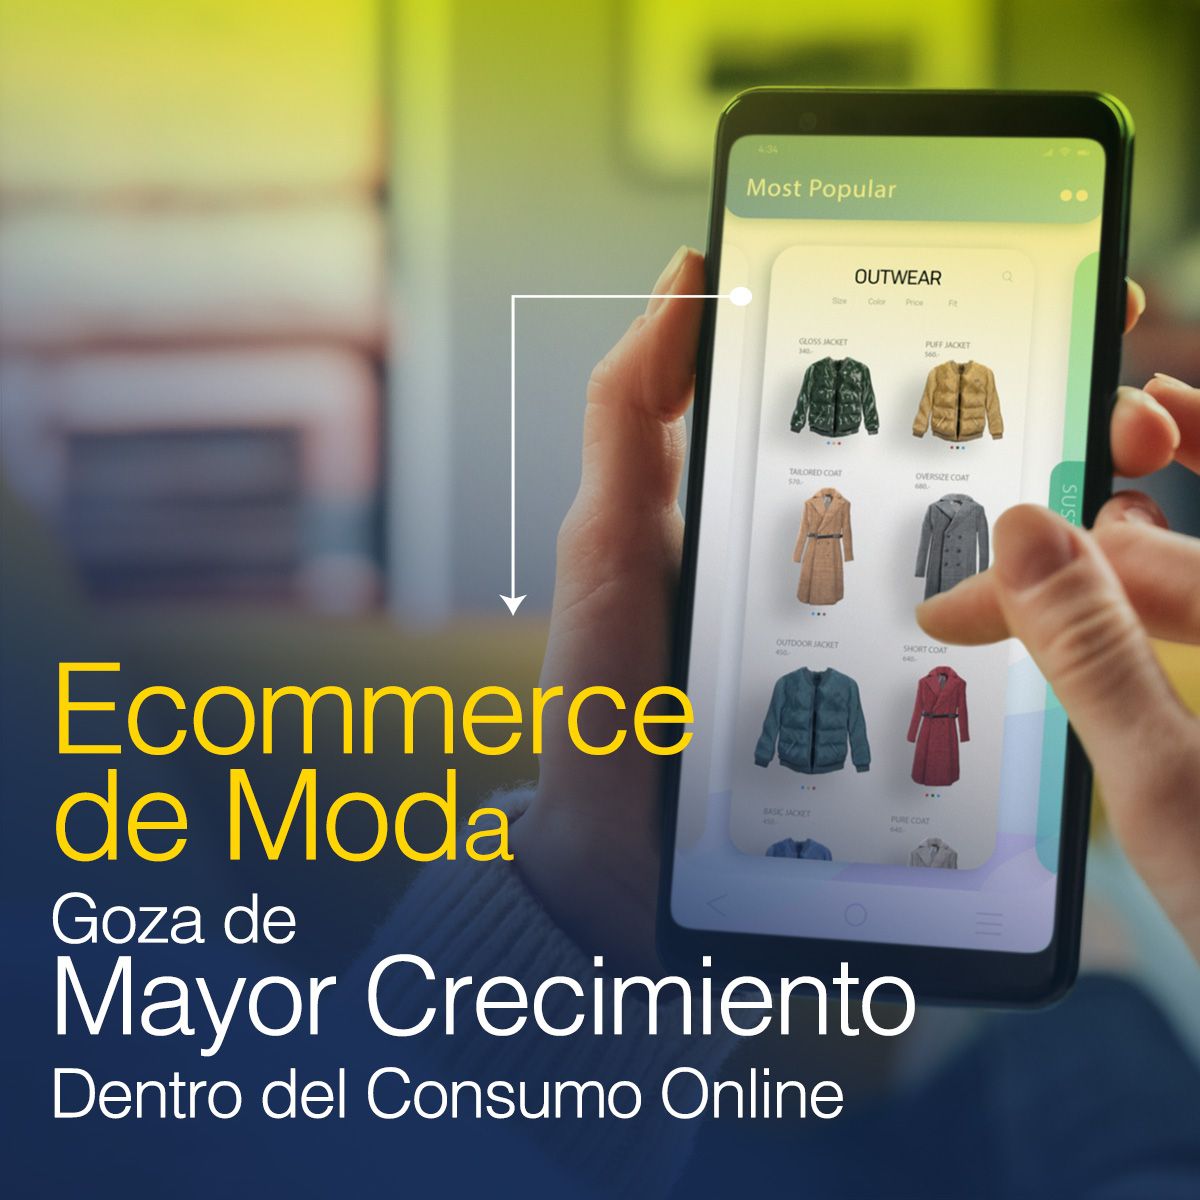 Ecommerce de Moda Goza de Mayor Crecimiento Dentro del Consumo Online